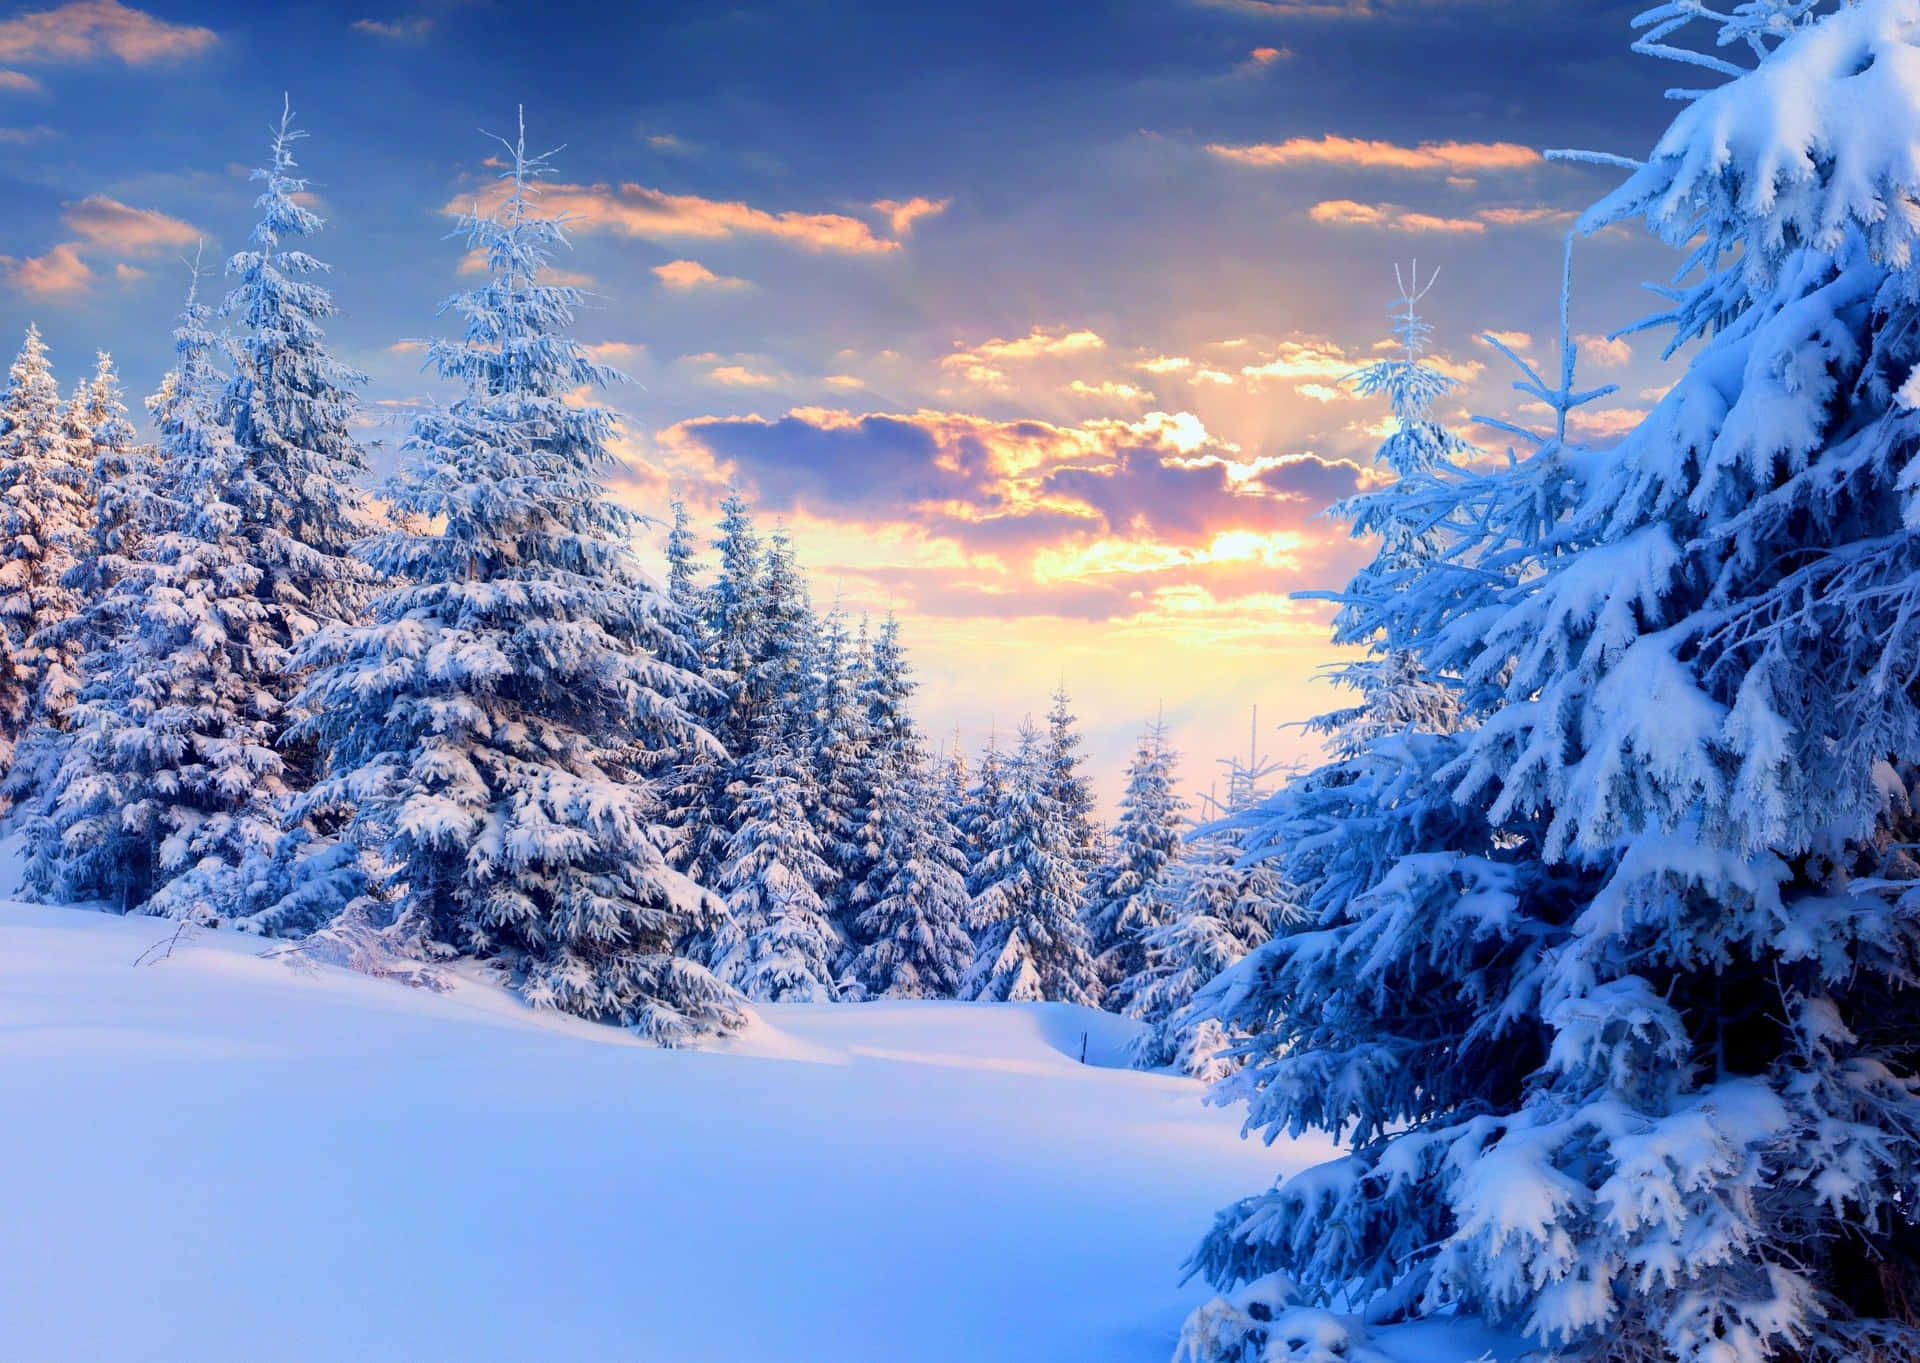 Genießedie Schönheit Des Winters In Dieser Atemberaubenden Landschaft.